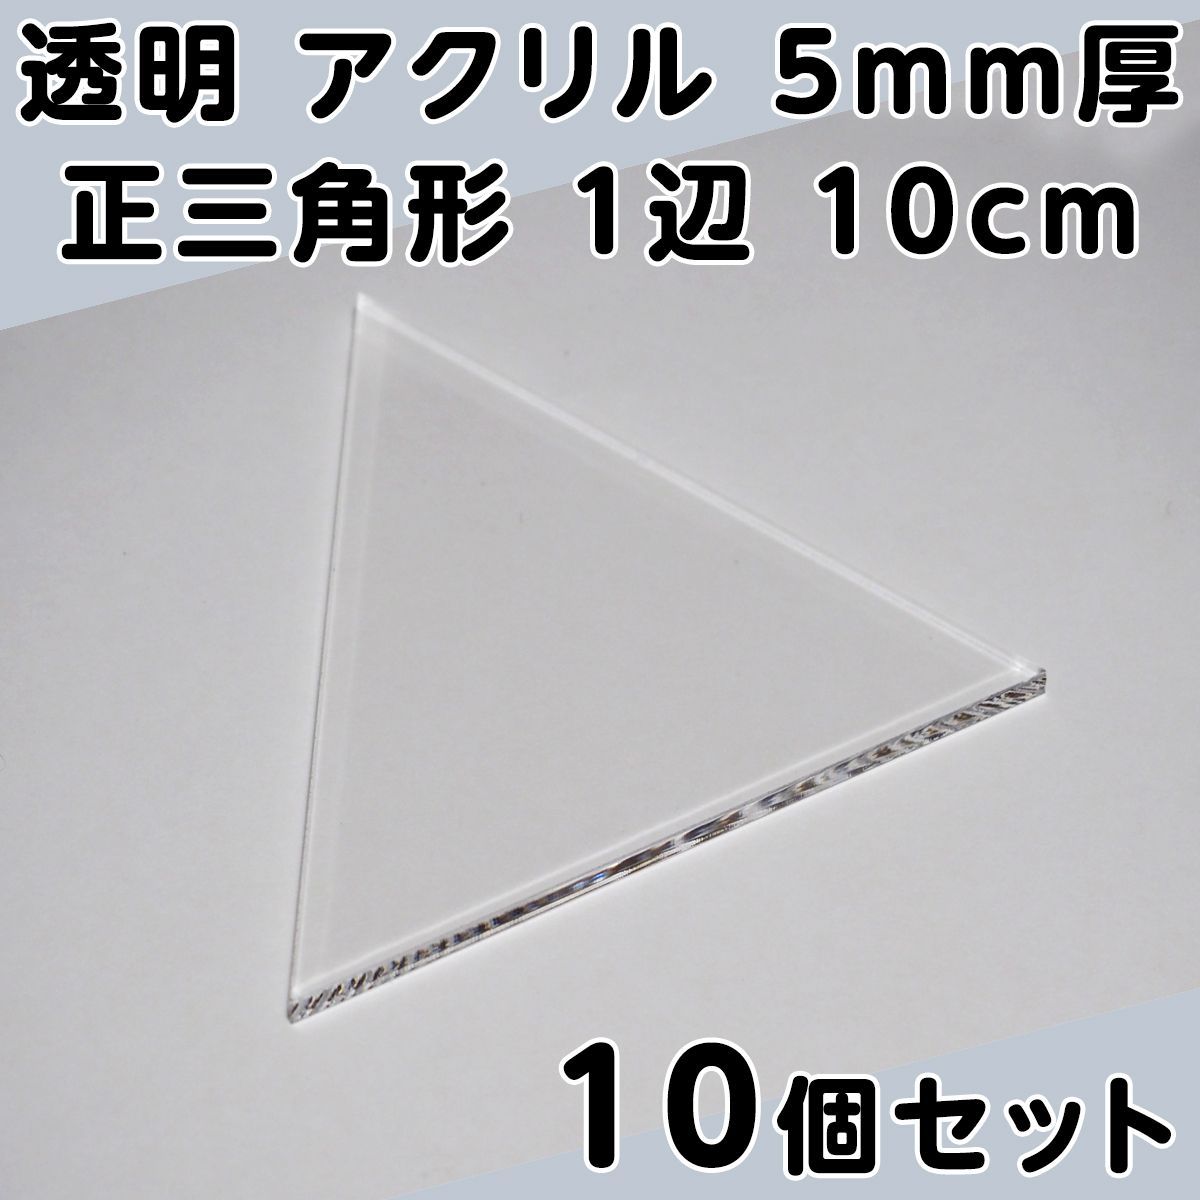 透明 アクリル 5mm厚 正三角形 1辺 10cm 10個セット - メルカリ